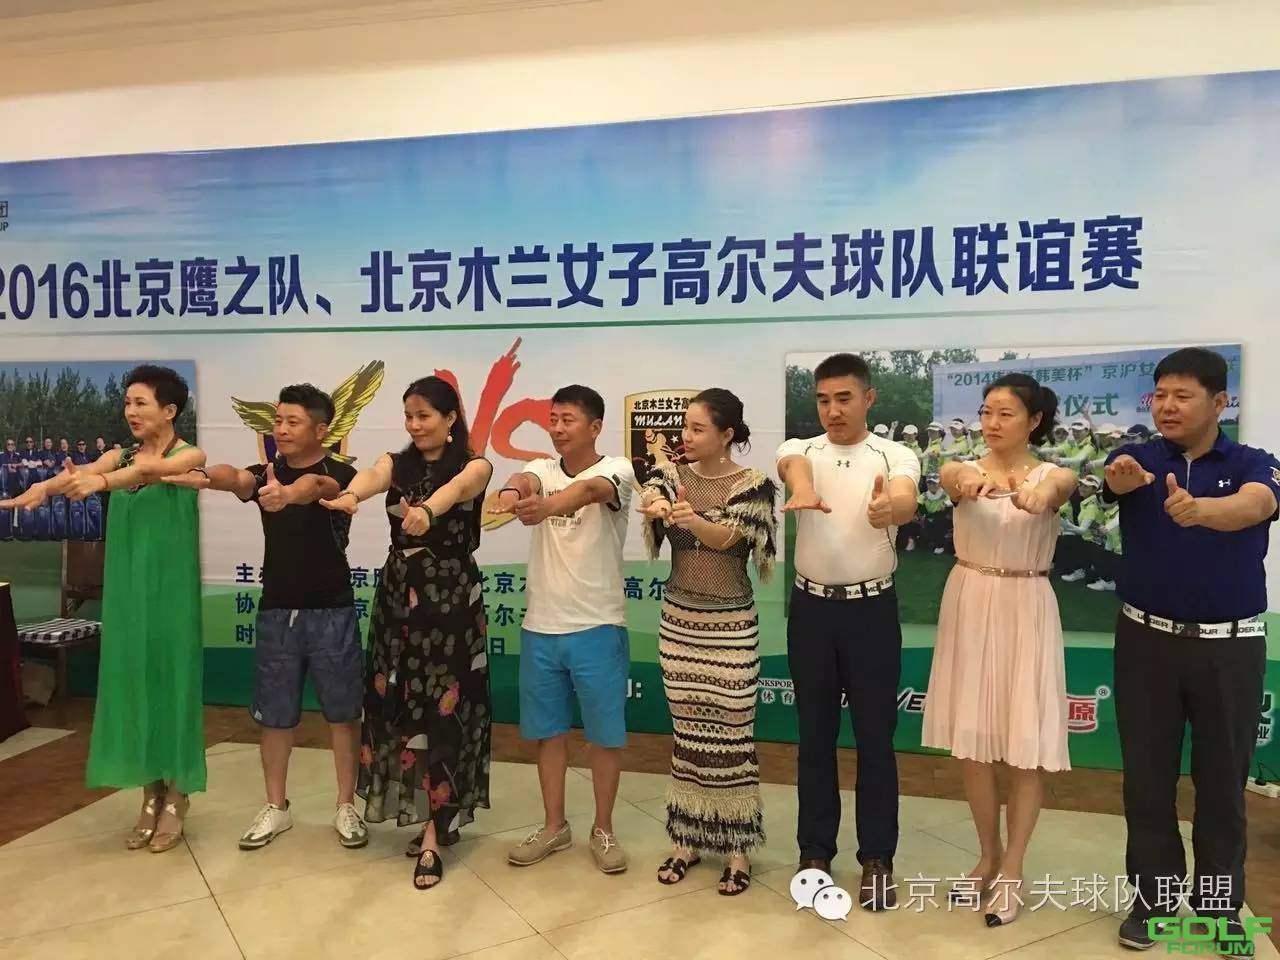 2016北京鹰之队、北京木兰女子高尔夫球队联谊赛